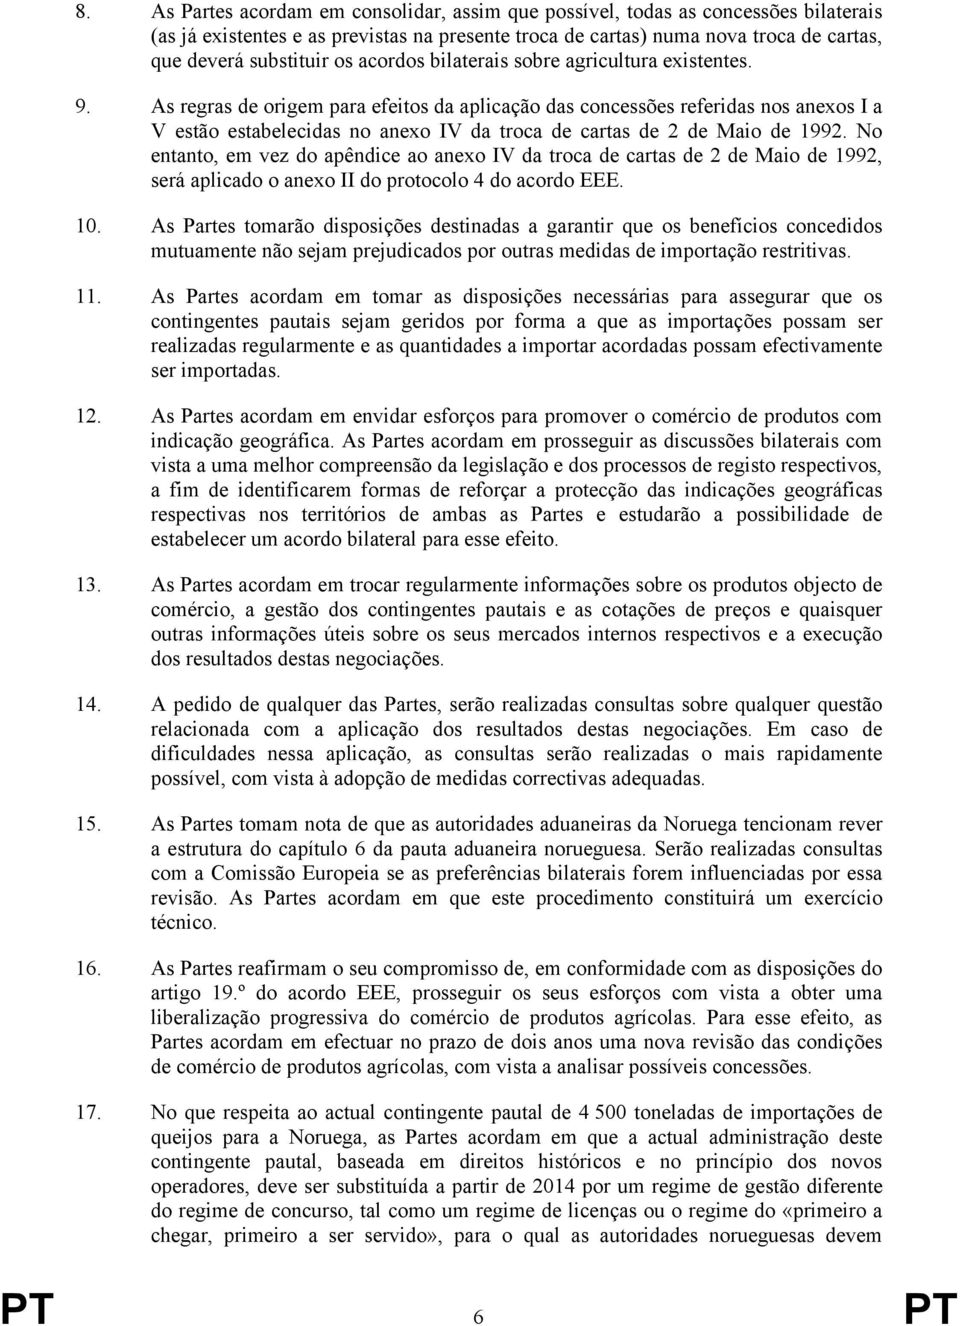 As regras de origem para efeitos da aplicação das concessões referidas nos anexos I a V estão estabelecidas no anexo IV da troca de cartas de 2 de Maio de 1992.